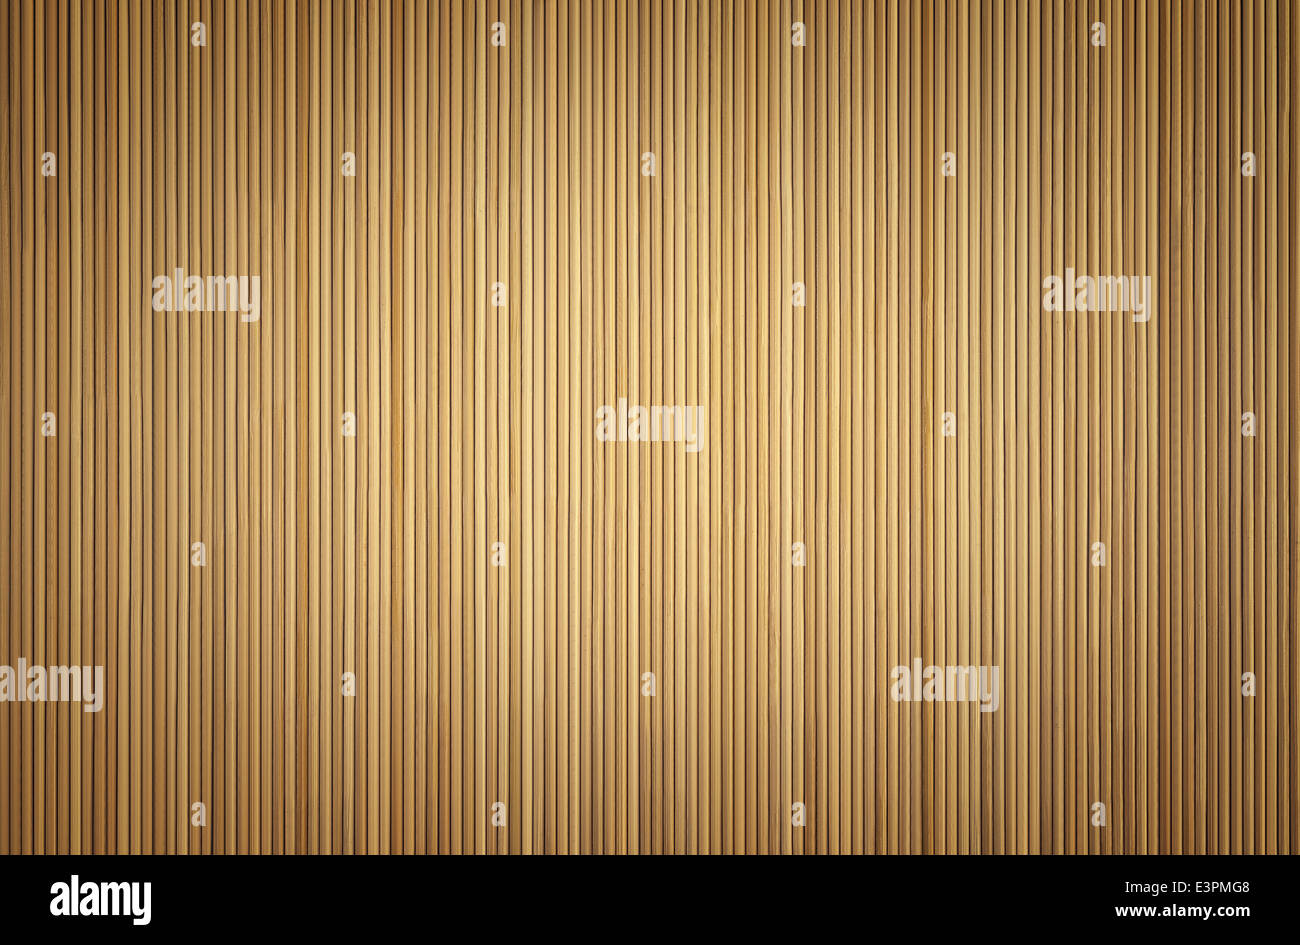 Fond brun fait de bâtons de bambou avec vignette Banque D'Images